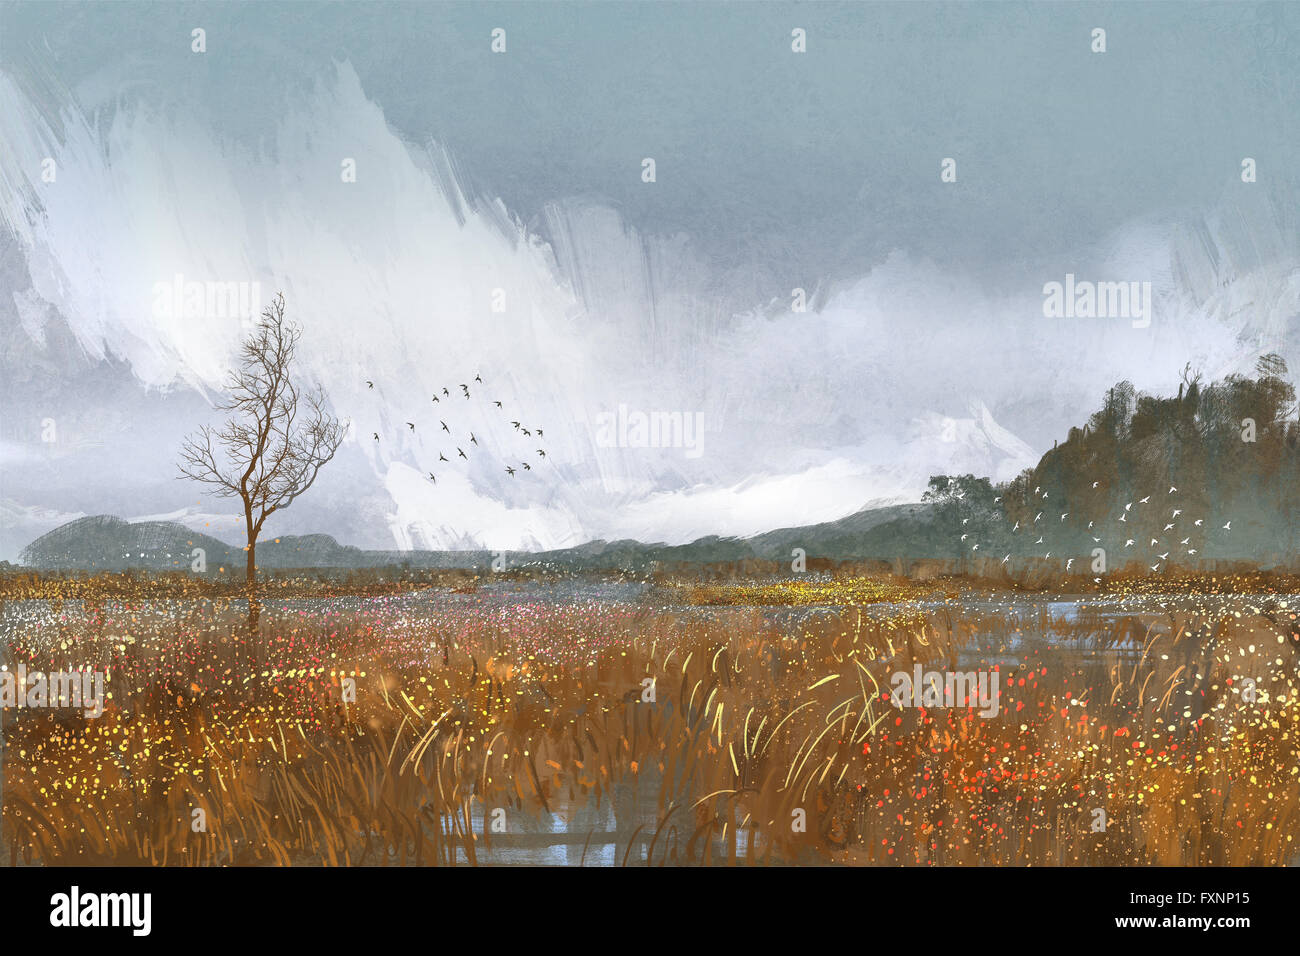 Gemälde Landschaft mit Feldern und Wiesen, Regenwetter, traurige Stimmung Stockfoto